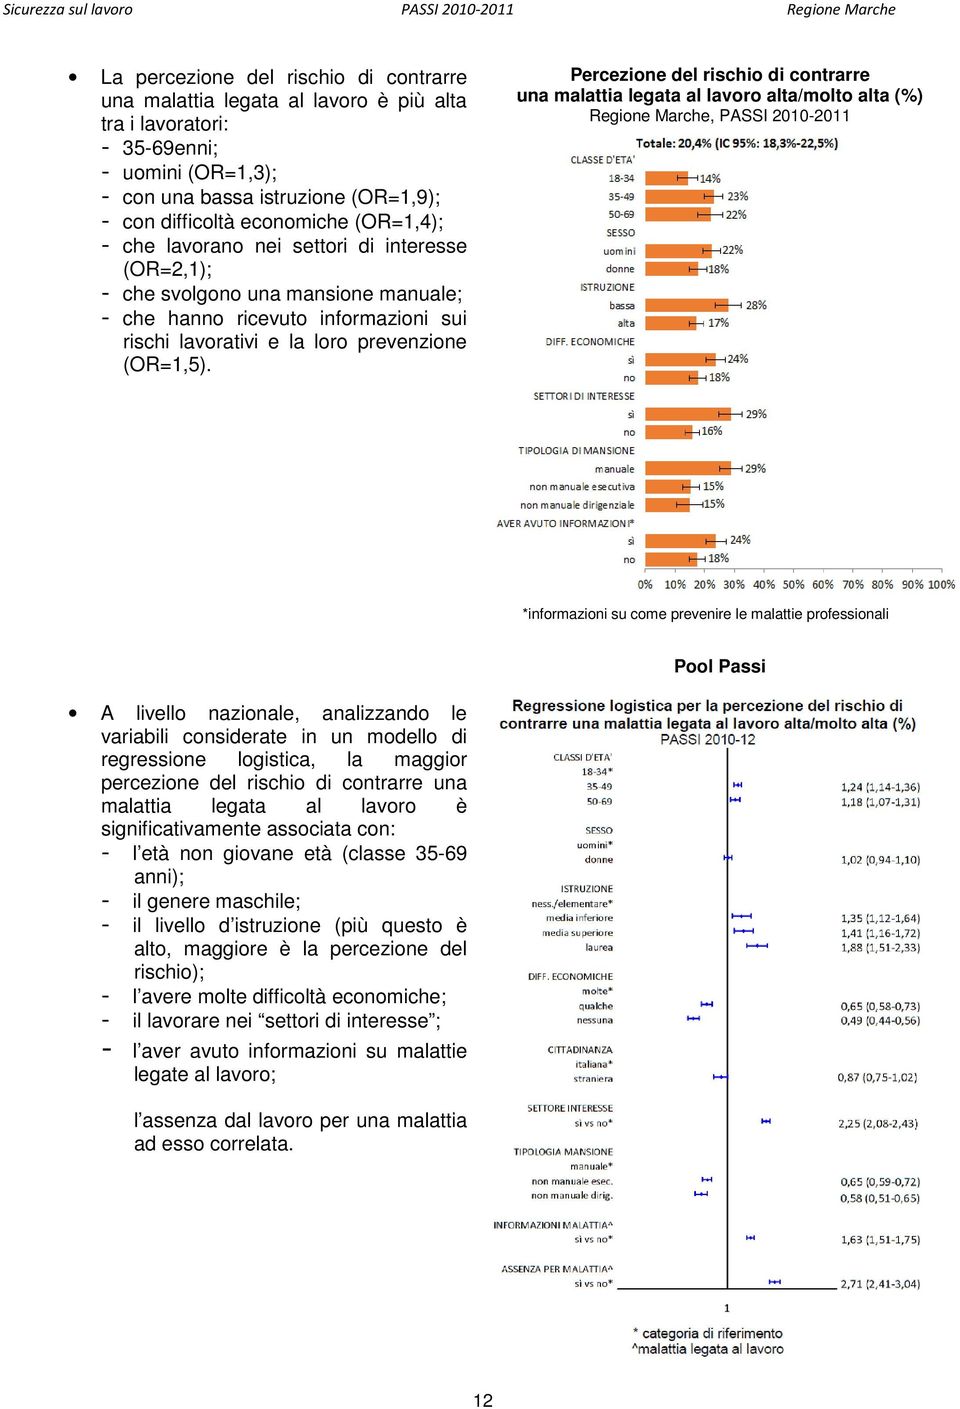 Percezione del rischio di contrarre una malattia legata al lavoro alta/molto alta (%) Regione Marche, PASSI 2010-2011 *informazioni su come prevenire le malattie professionali Pool Passi A livello